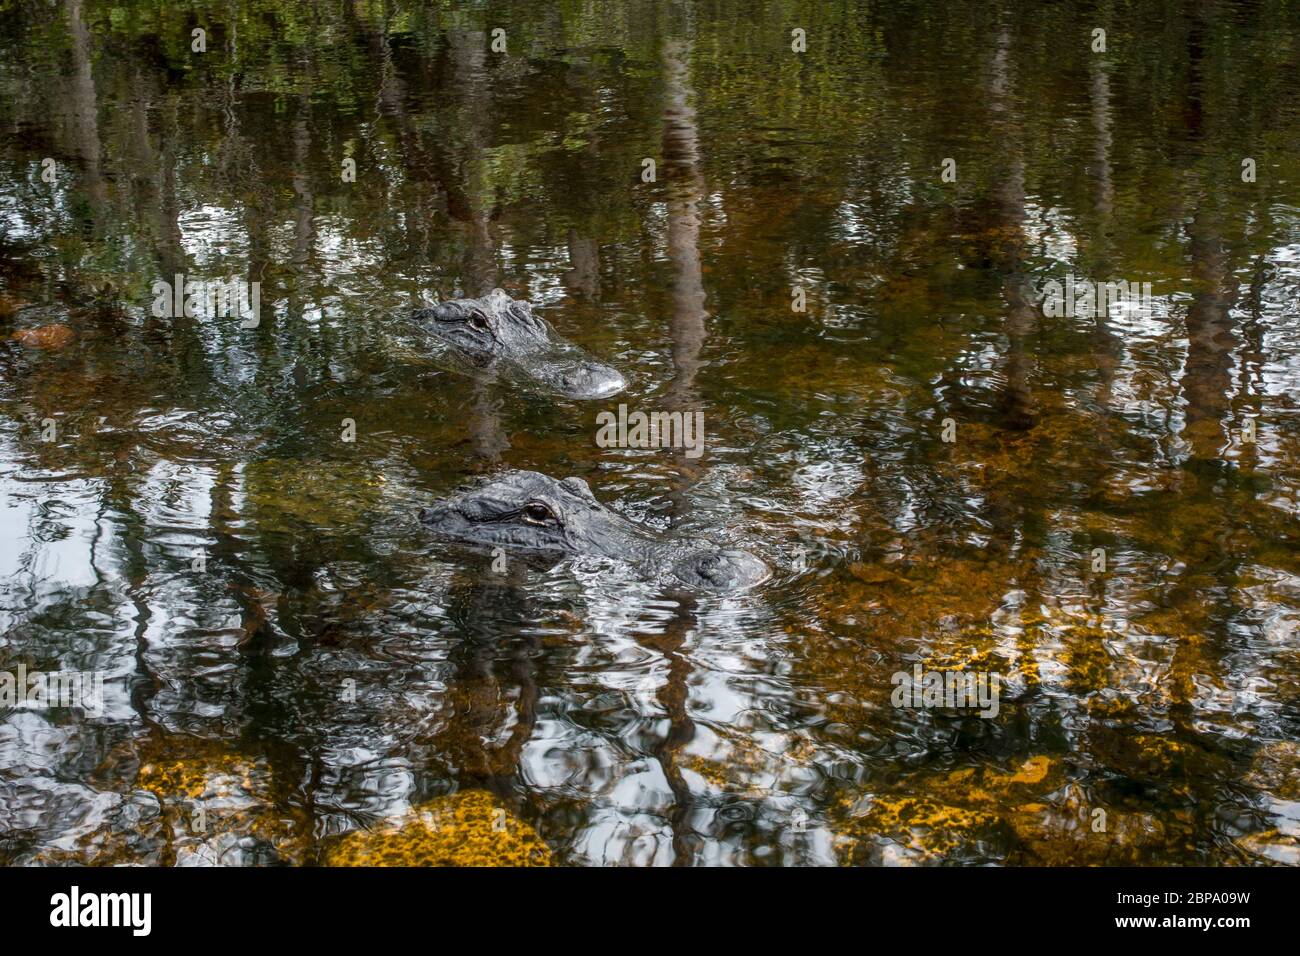 L'alligatore americano galleggia in acque tranquille profonde nella palude della foresta di cipressi, la Big Cypress Preserve, Everglades, Florida. Foto Stock